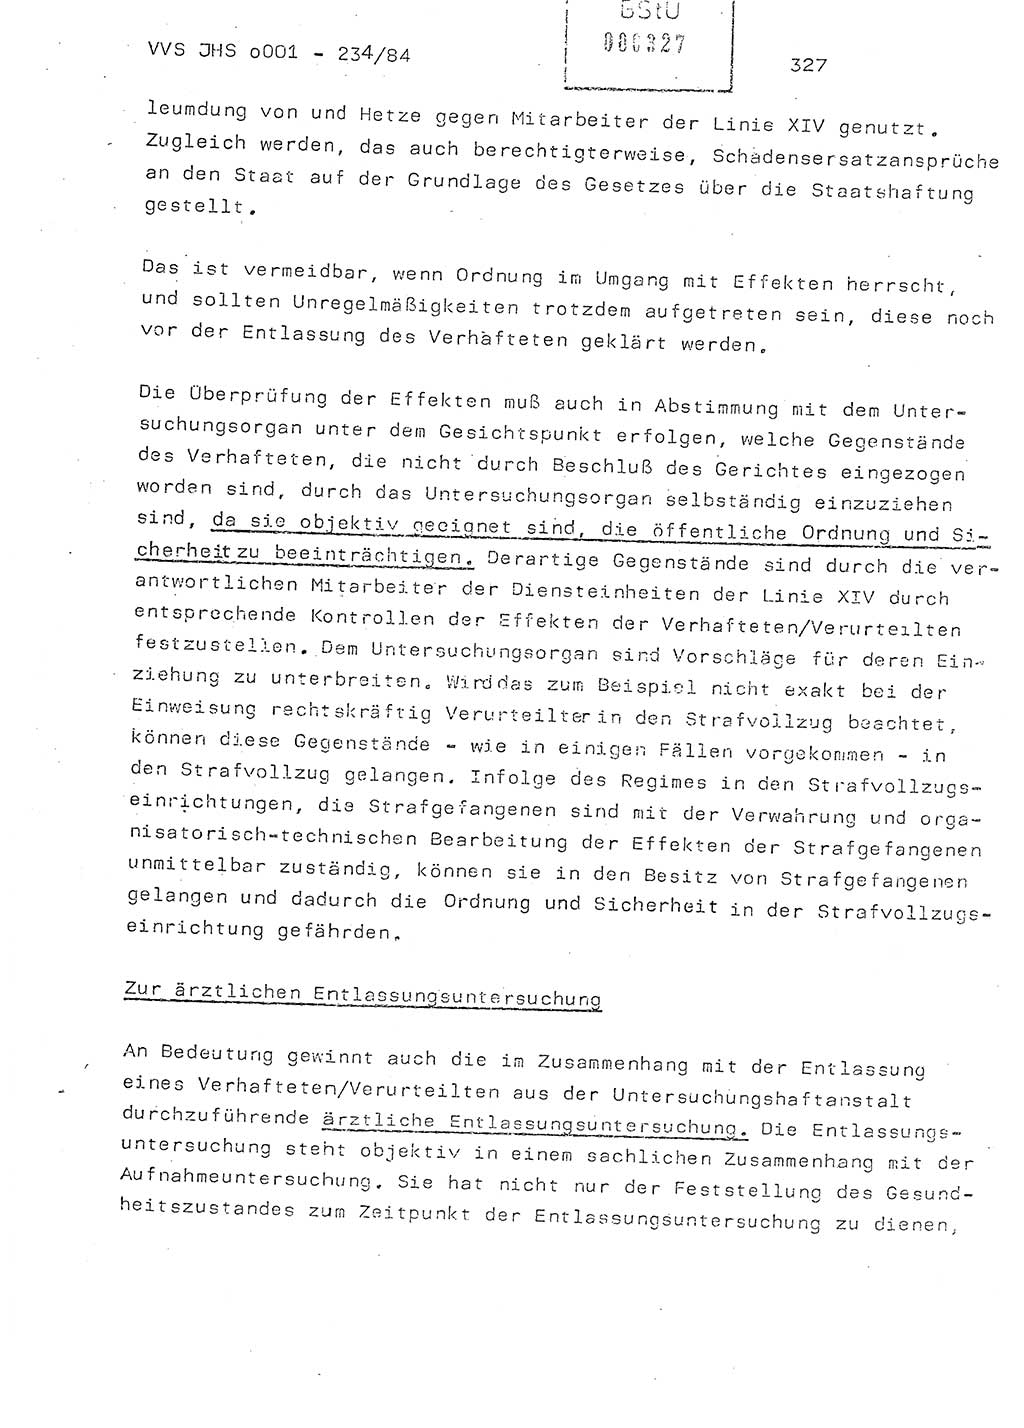 Dissertation Oberst Siegfried Rataizick (Abt. ⅩⅣ), Oberstleutnant Volkmar Heinz (Abt. ⅩⅣ), Oberstleutnant Werner Stein (HA Ⅸ), Hauptmann Heinz Conrad (JHS), Ministerium für Staatssicherheit (MfS) [Deutsche Demokratische Republik (DDR)], Juristische Hochschule (JHS), Vertrauliche Verschlußsache (VVS) o001-234/84, Potsdam 1984, Seite 327 (Diss. MfS DDR JHS VVS o001-234/84 1984, S. 327)